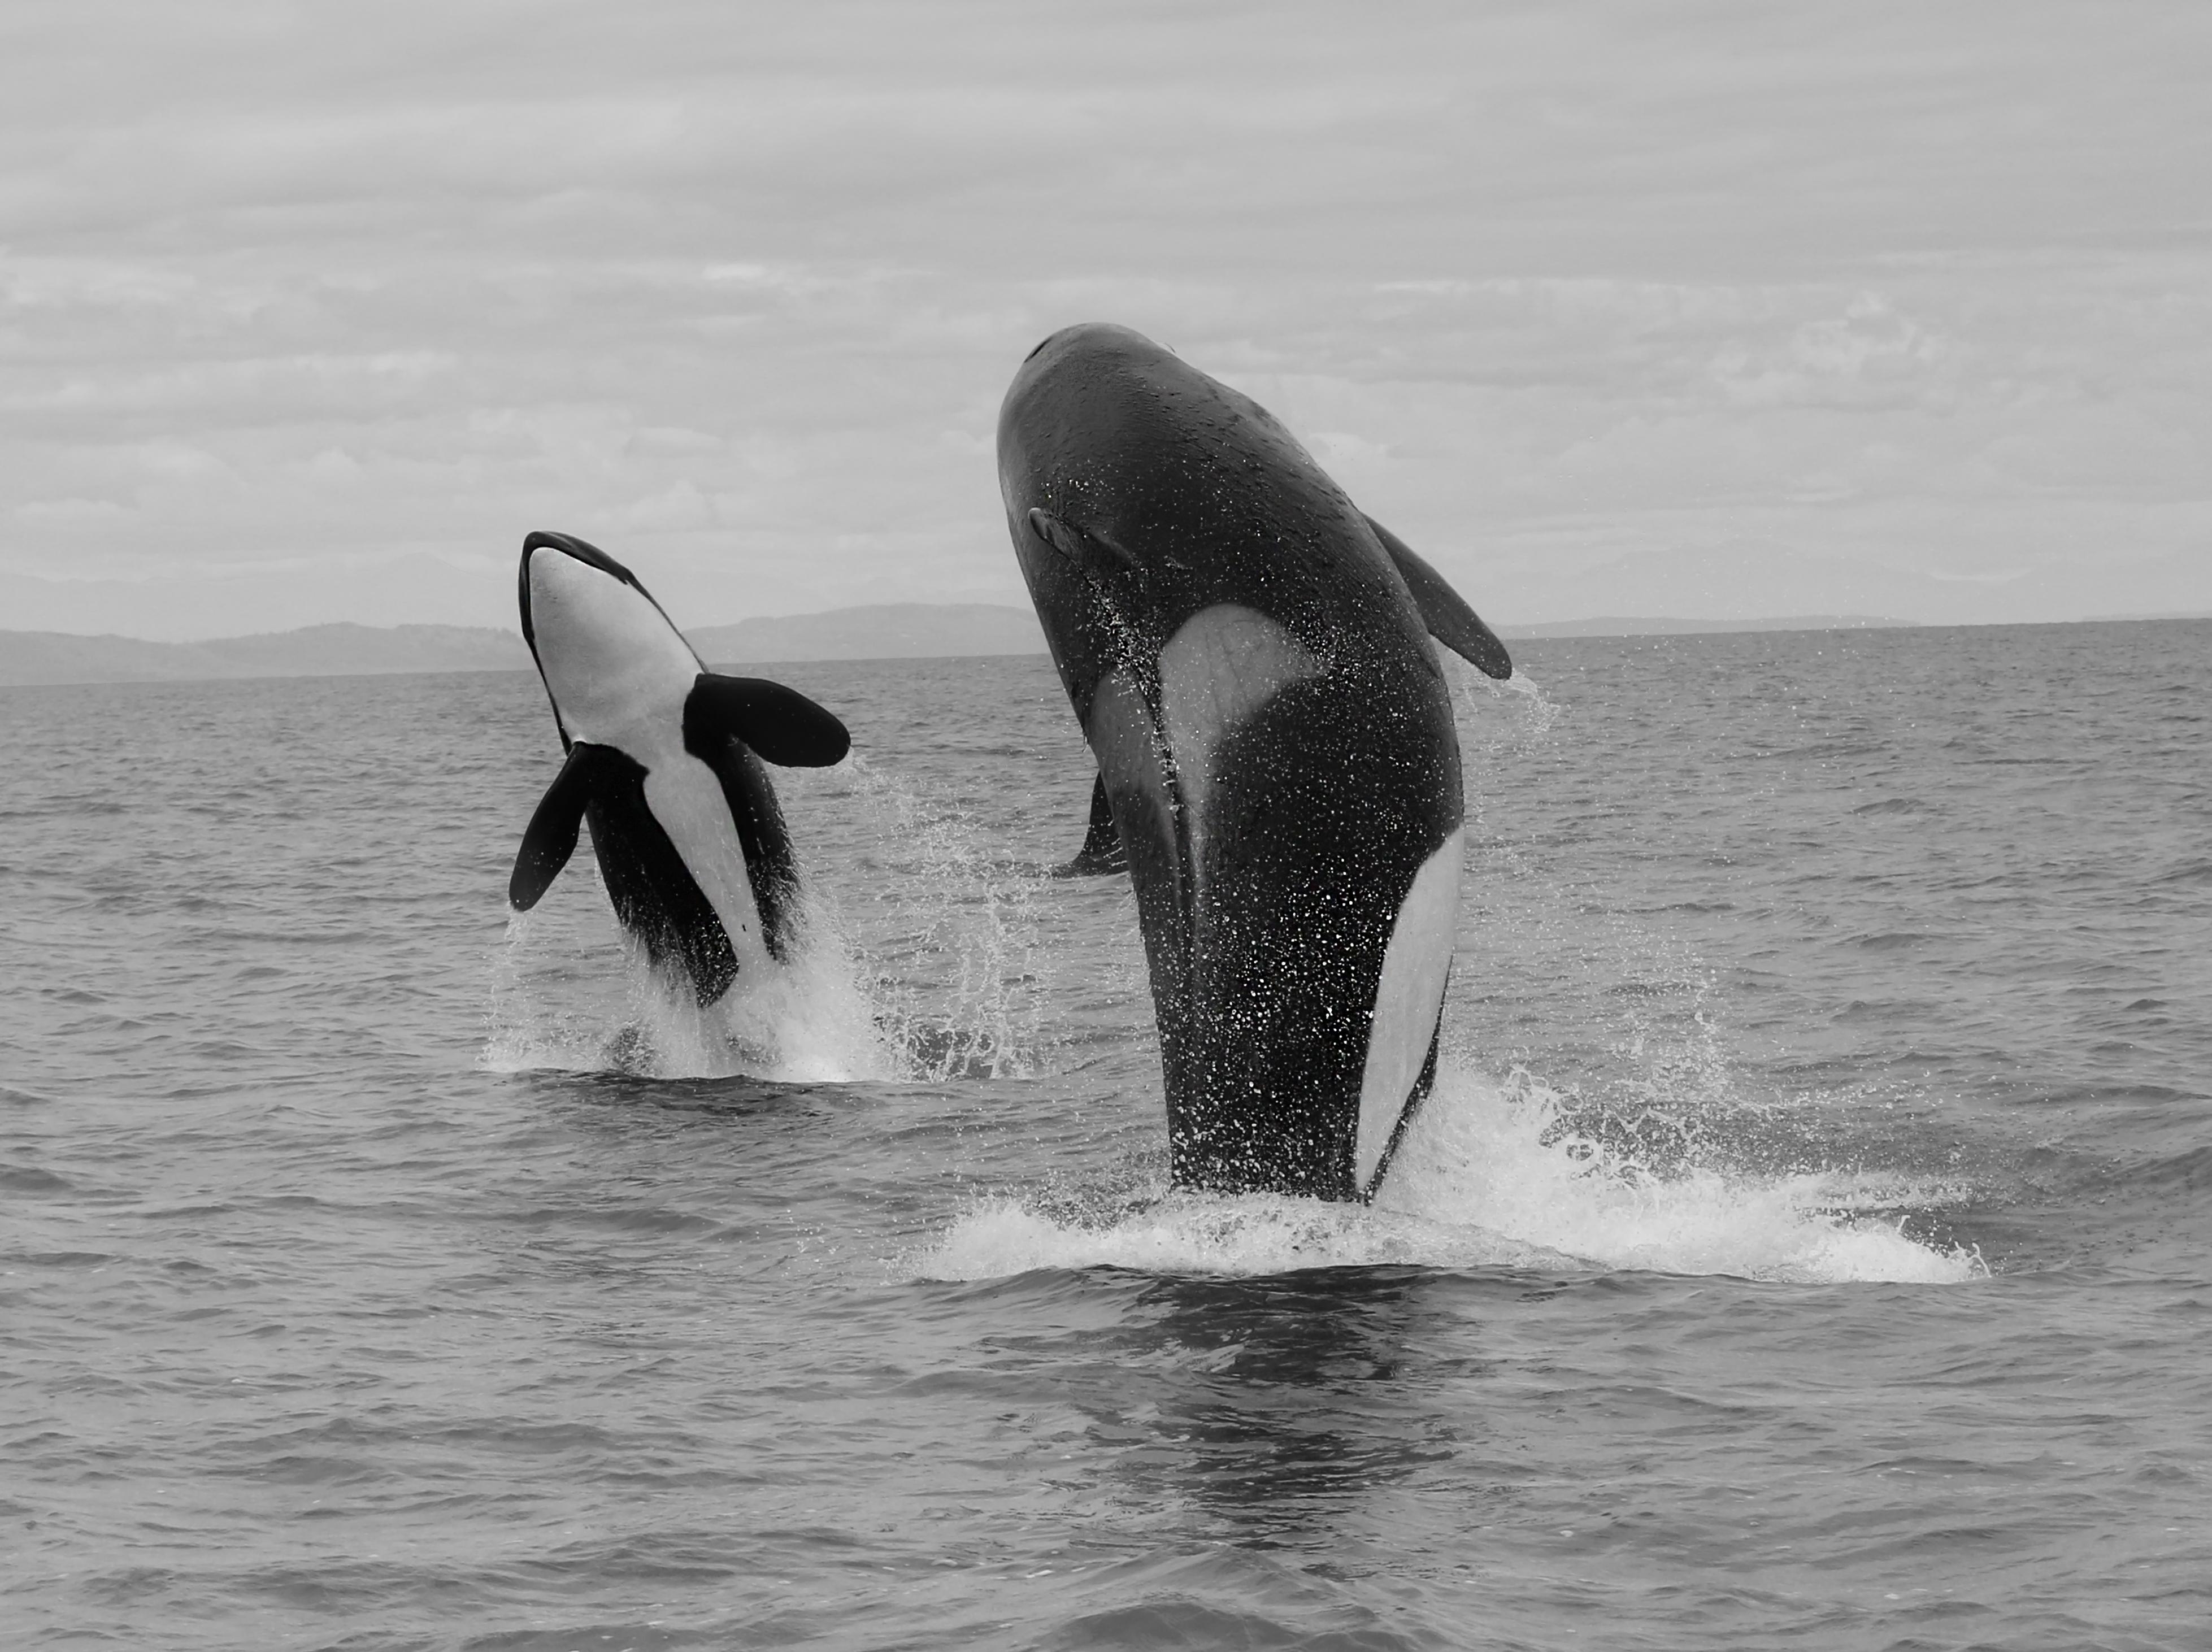 Black and White Photograph Shane Russeck - "La double brèche d'Orca  Photographie de baleinier tueur en noir et blanc 36x48 